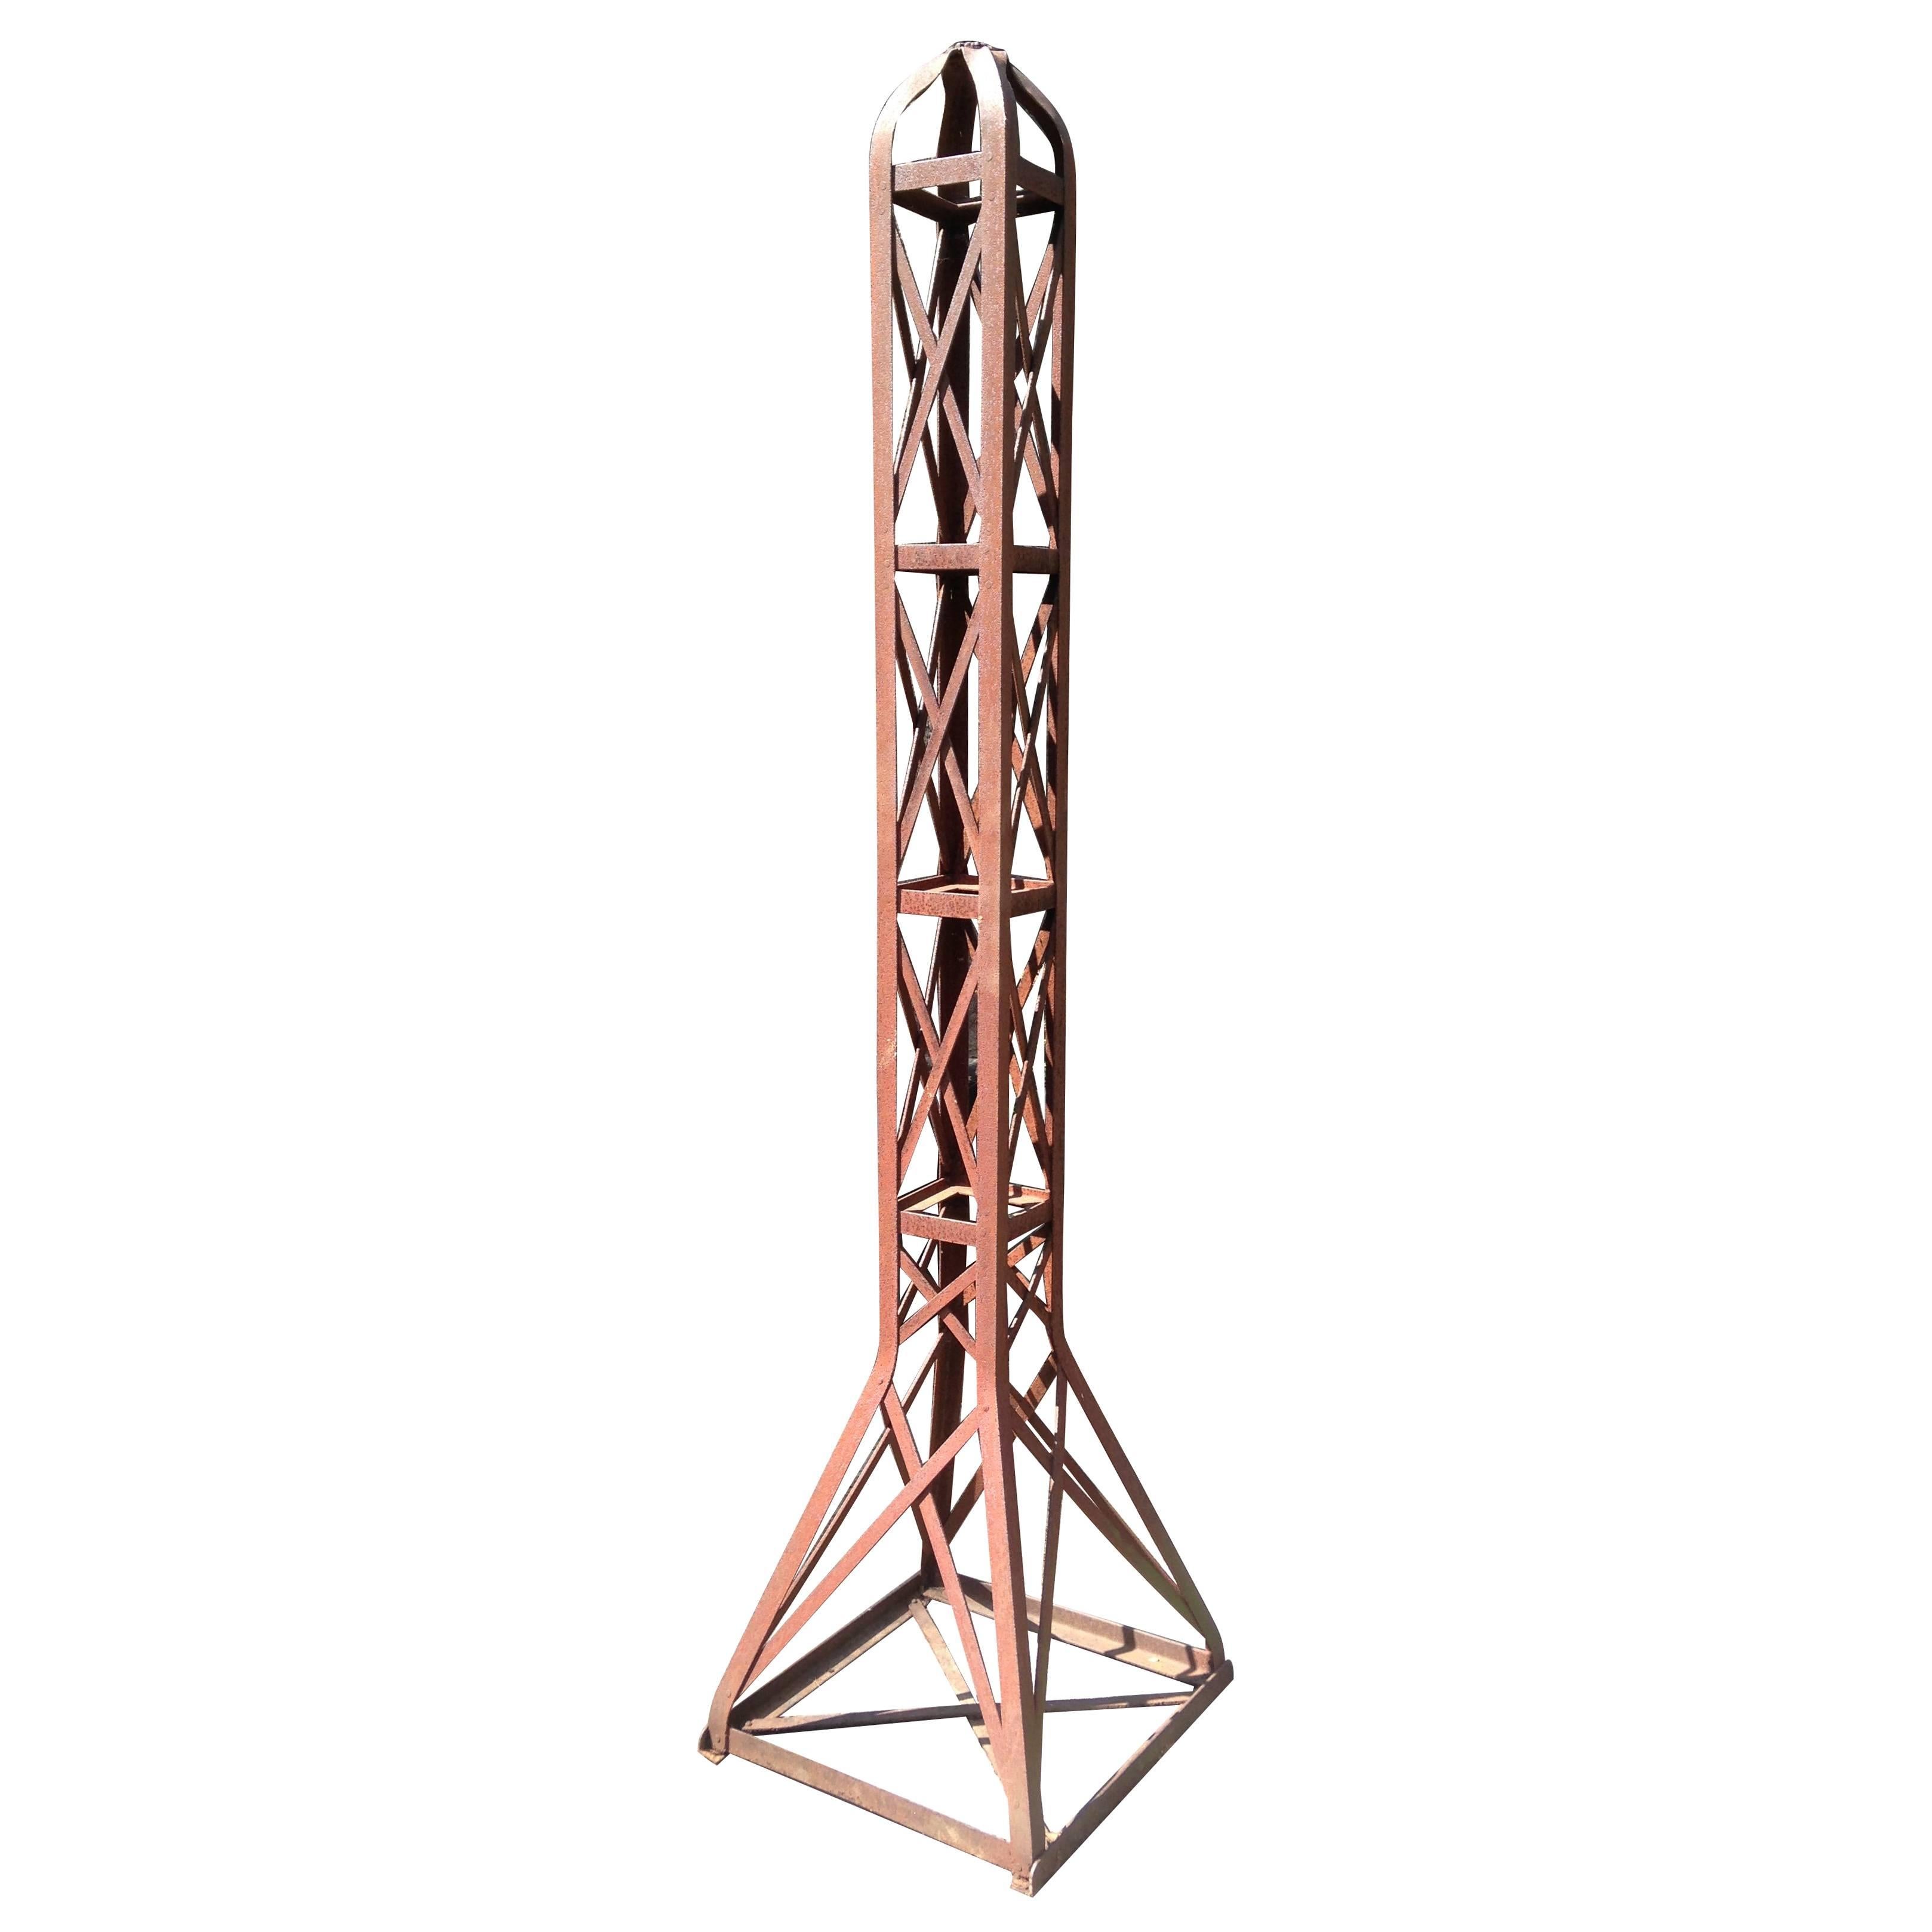 Seltene große französische frühe moderne Eisenskulptur / Eiffelturm-Obelisk, 1920